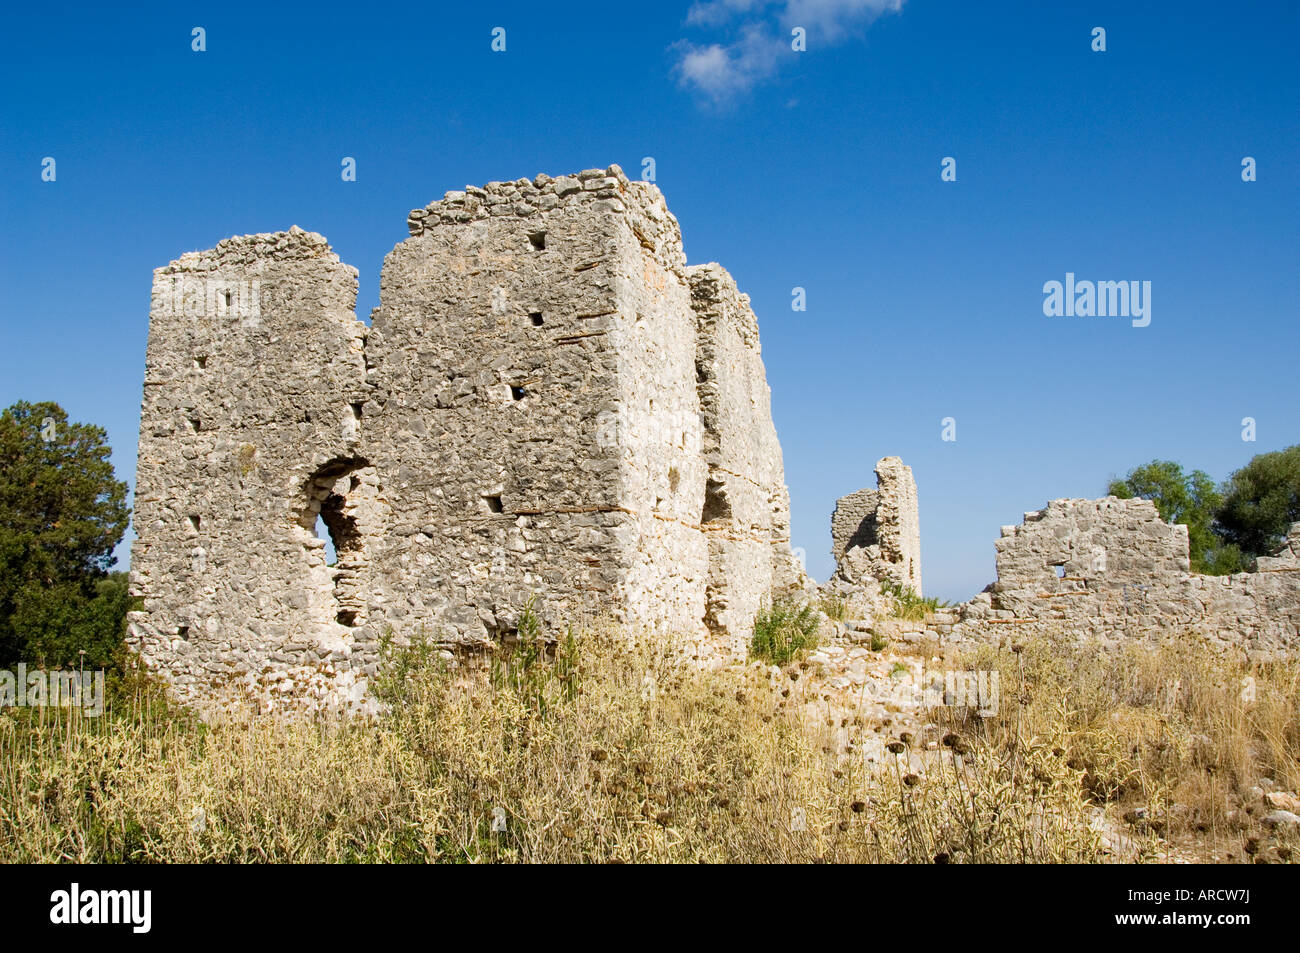 Vieille église en ruine, Fiskardo, Céphalonie Céphalonie (), îles Ioniennes, Grèce, Europe Banque D'Images